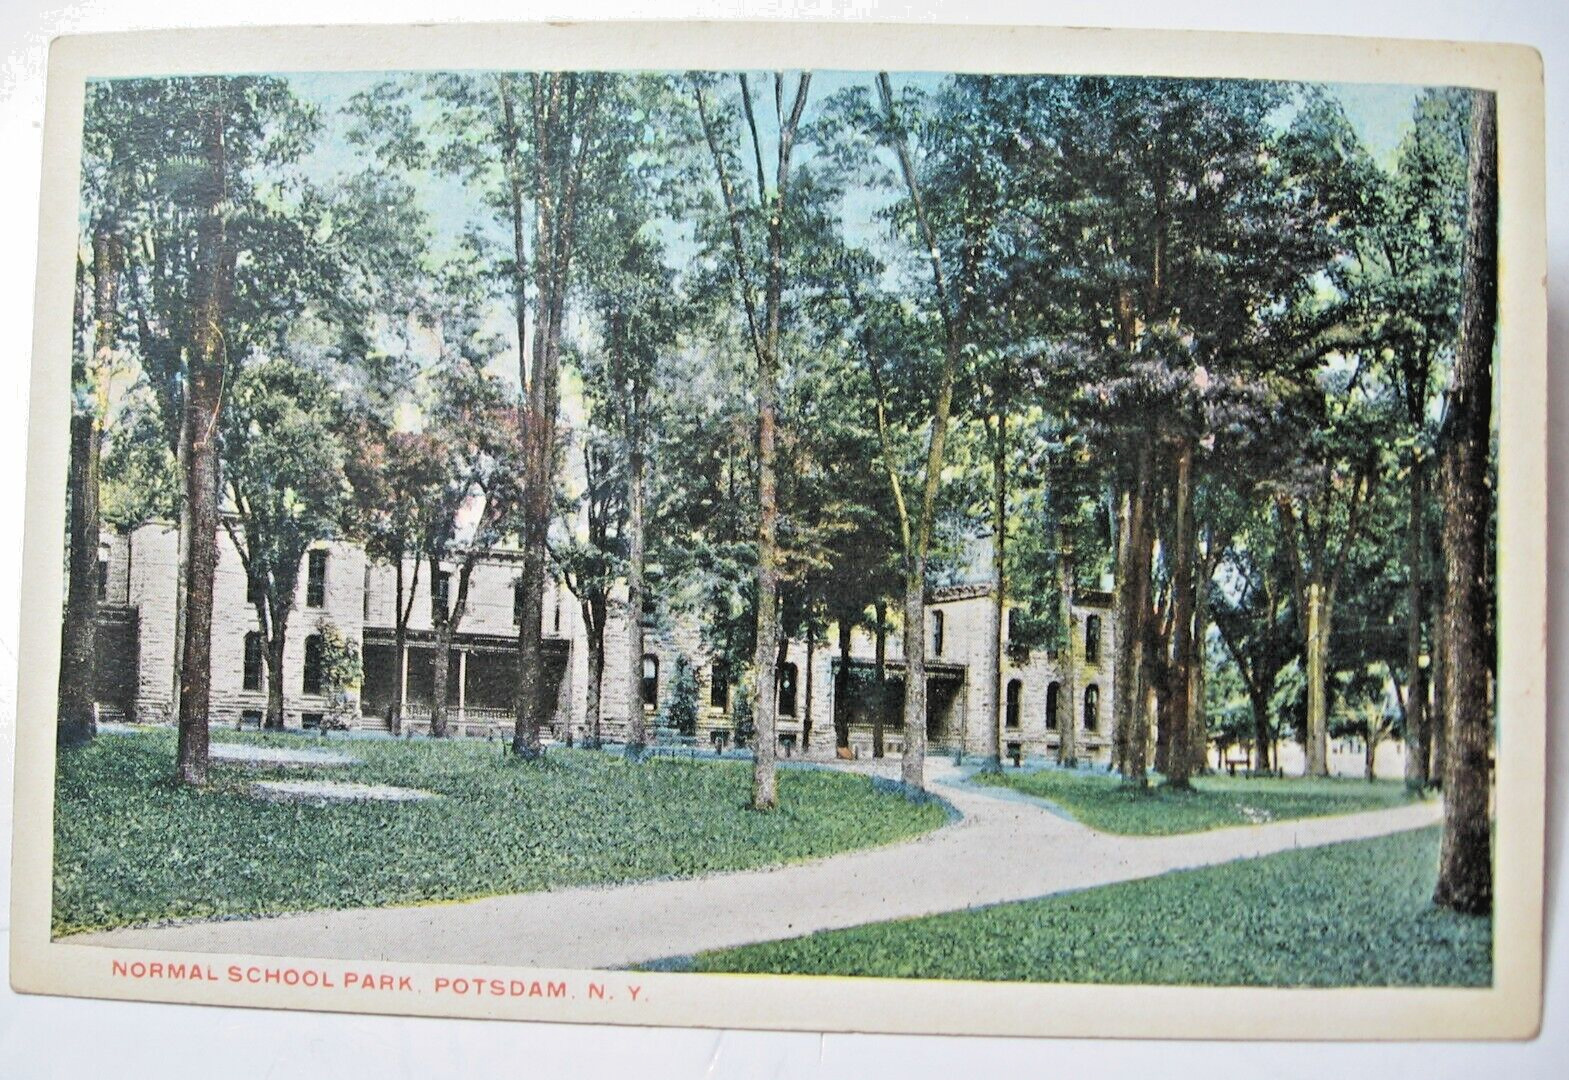 1916 Normal School Park, Potsdam, N.Y. Postcard (No. 2)